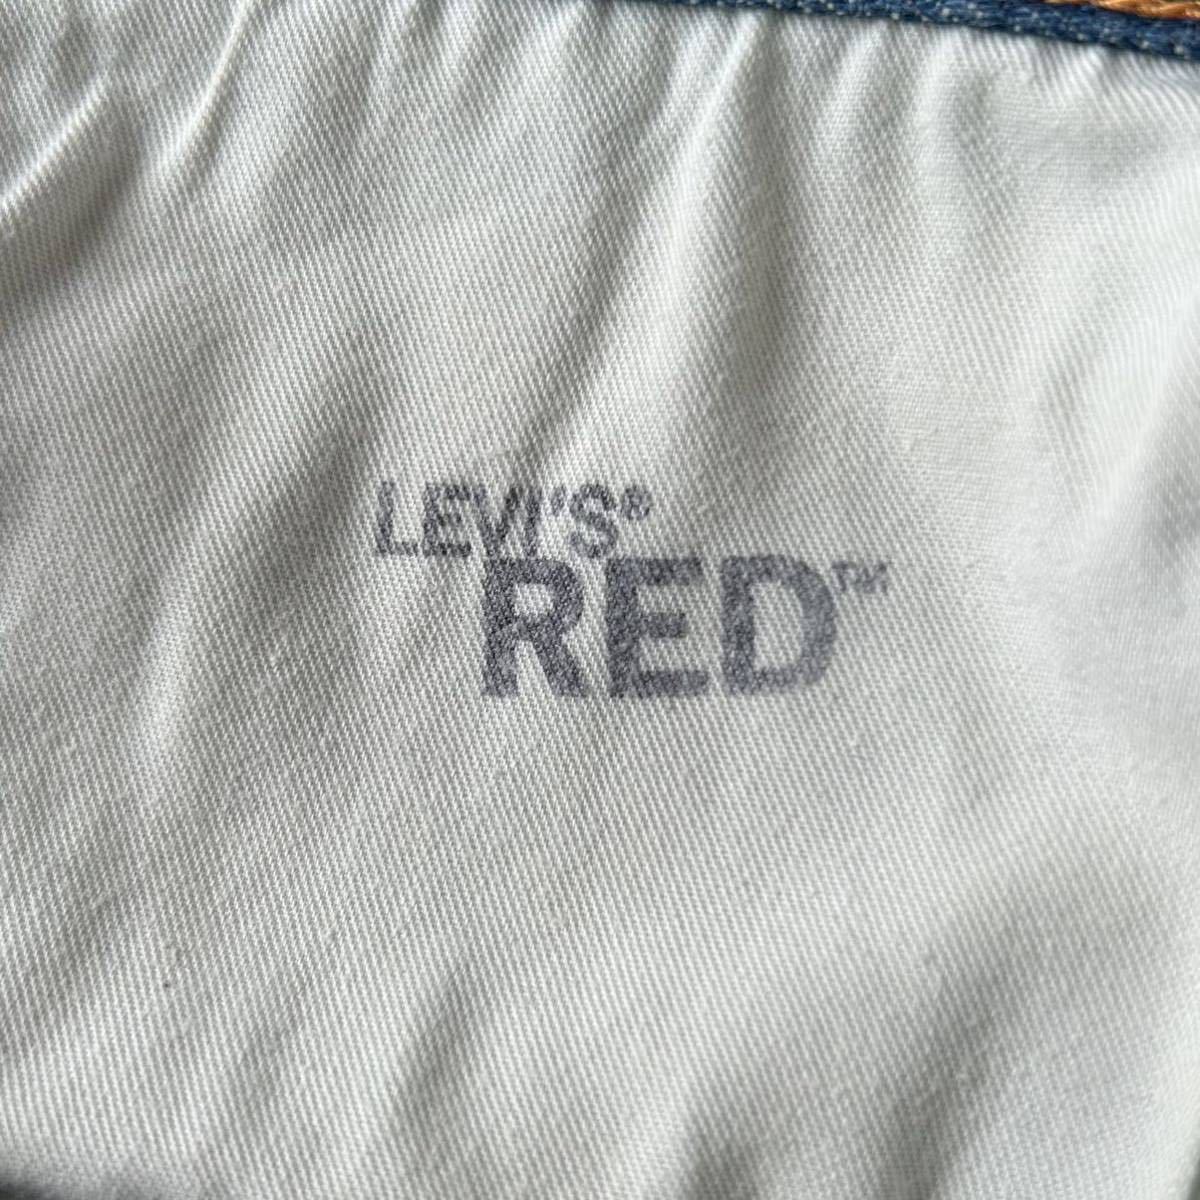 スペイン製 LEVI'S RED リーバイスレッド 1st STANDARD 立体裁断 デニム パンツ 30 2003 インディゴ スタンダード ジーンズ ヴィンテージ_画像8